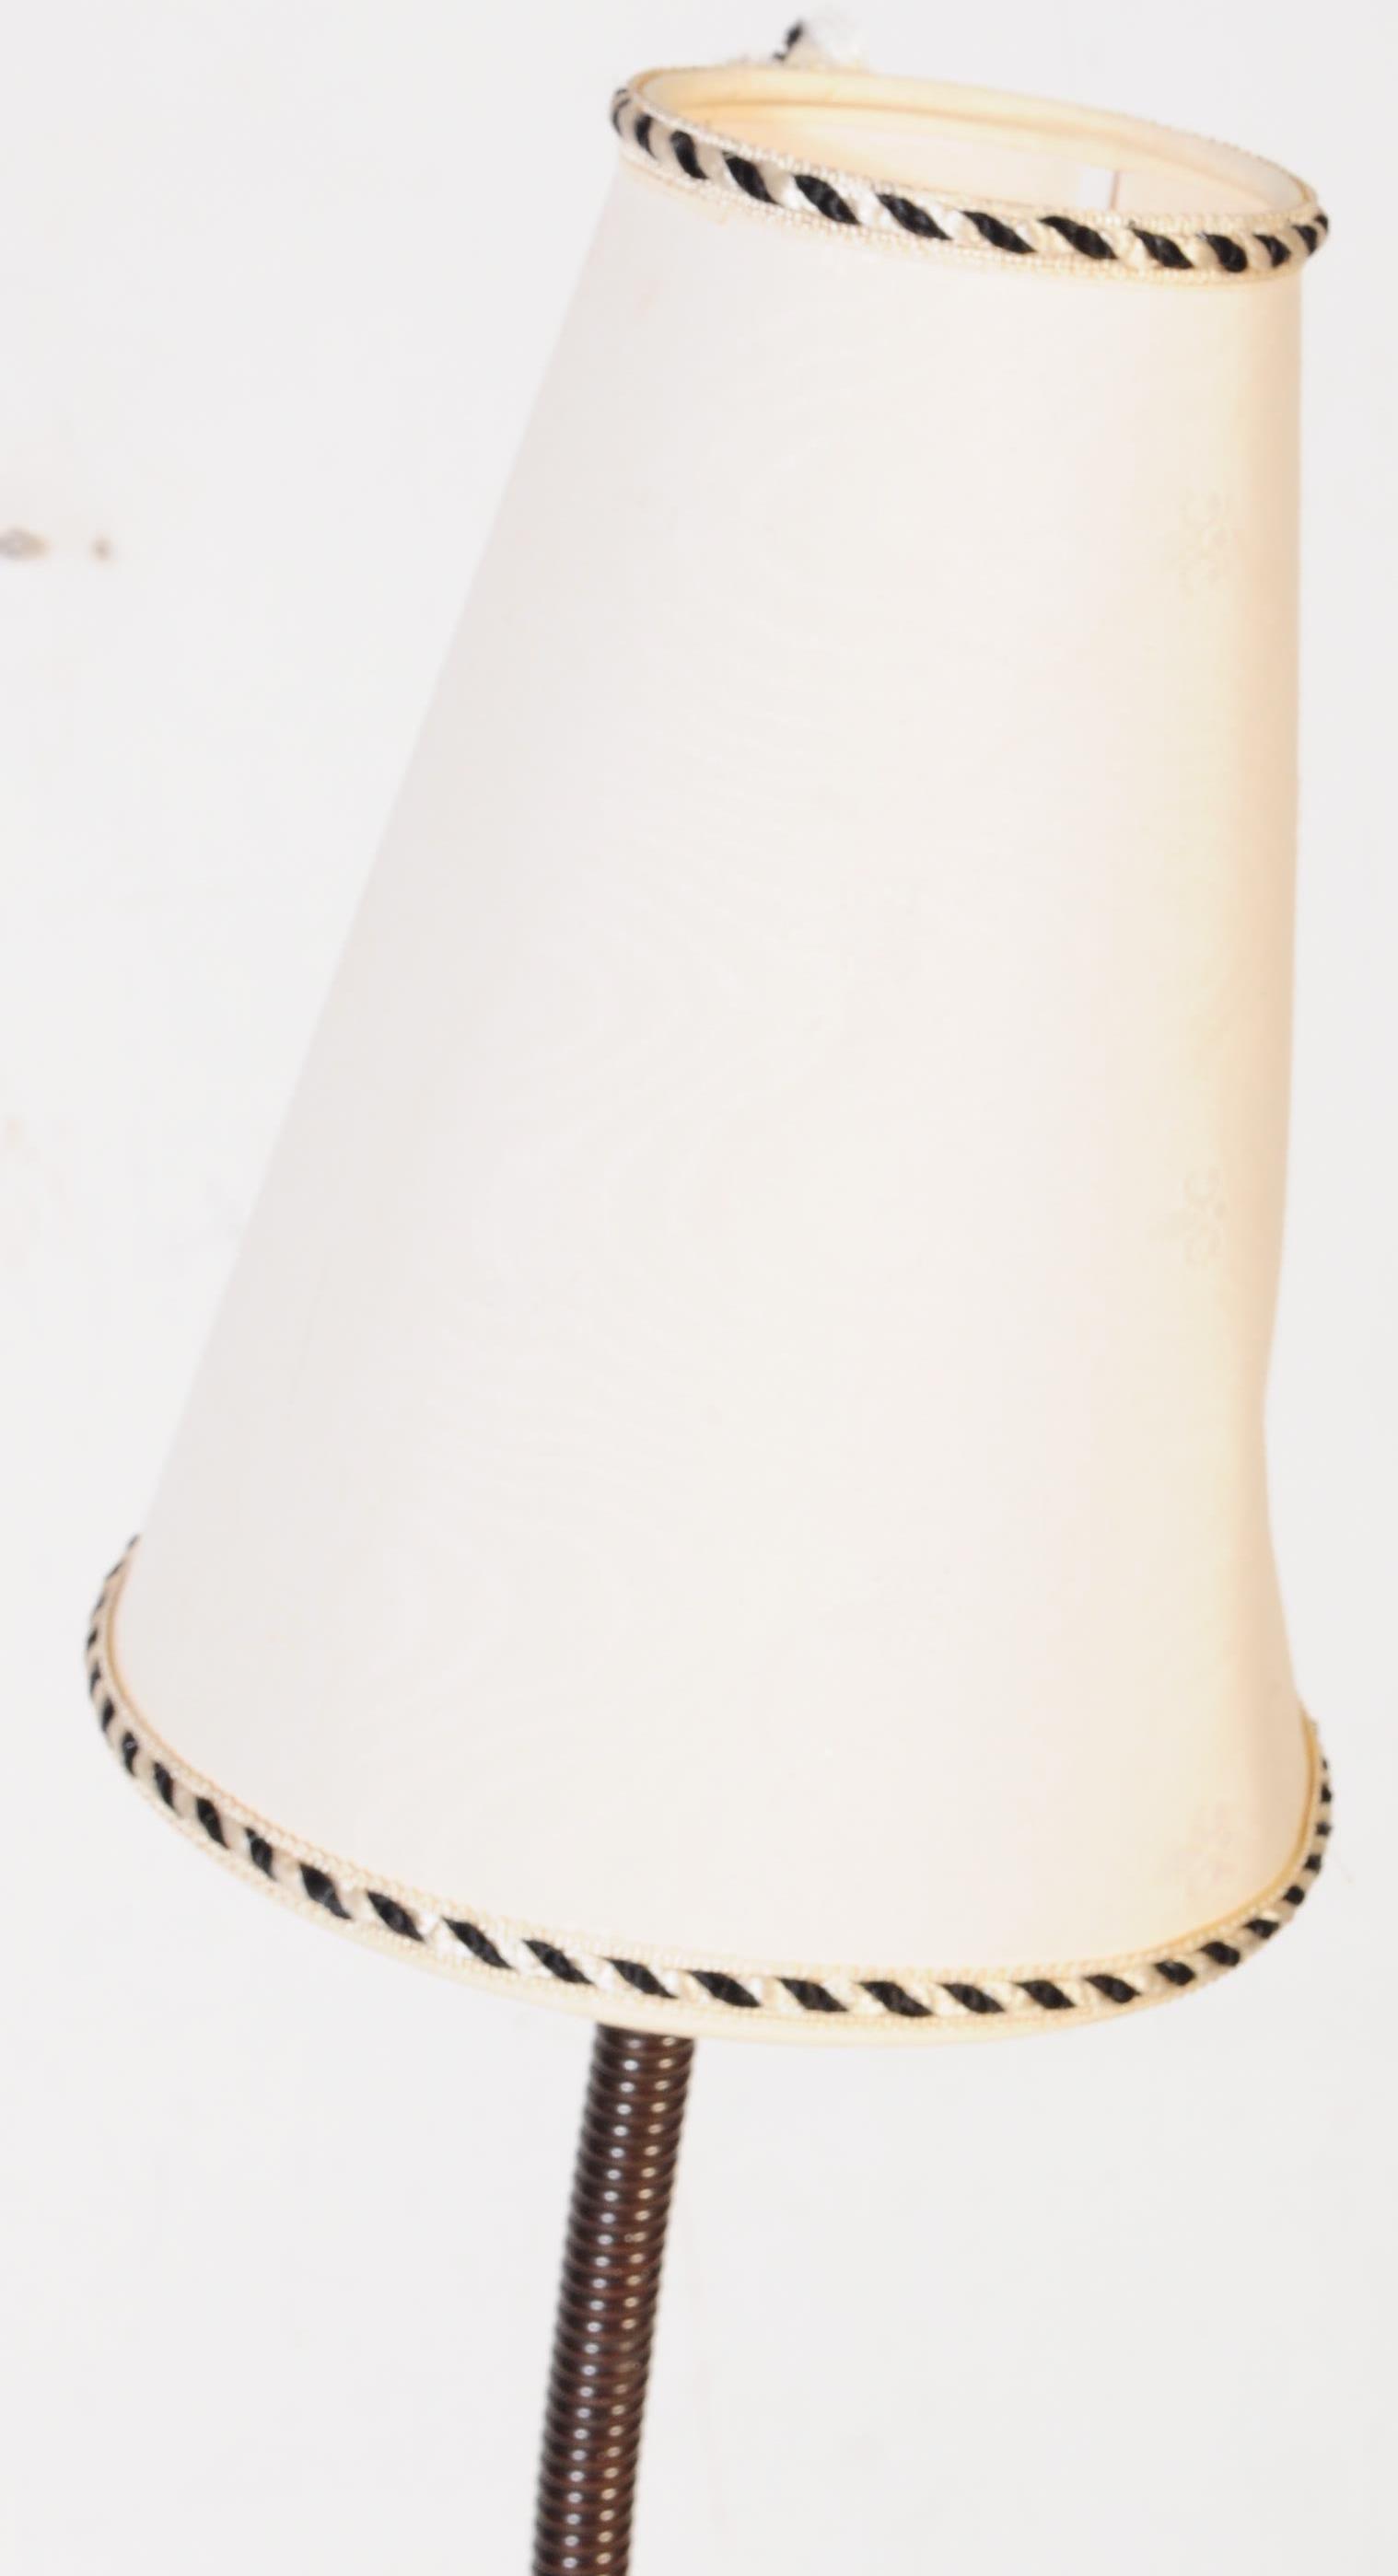 VINTAGE RETRO MID CENTURY TEAK STANDARD LAMP - Image 4 of 5